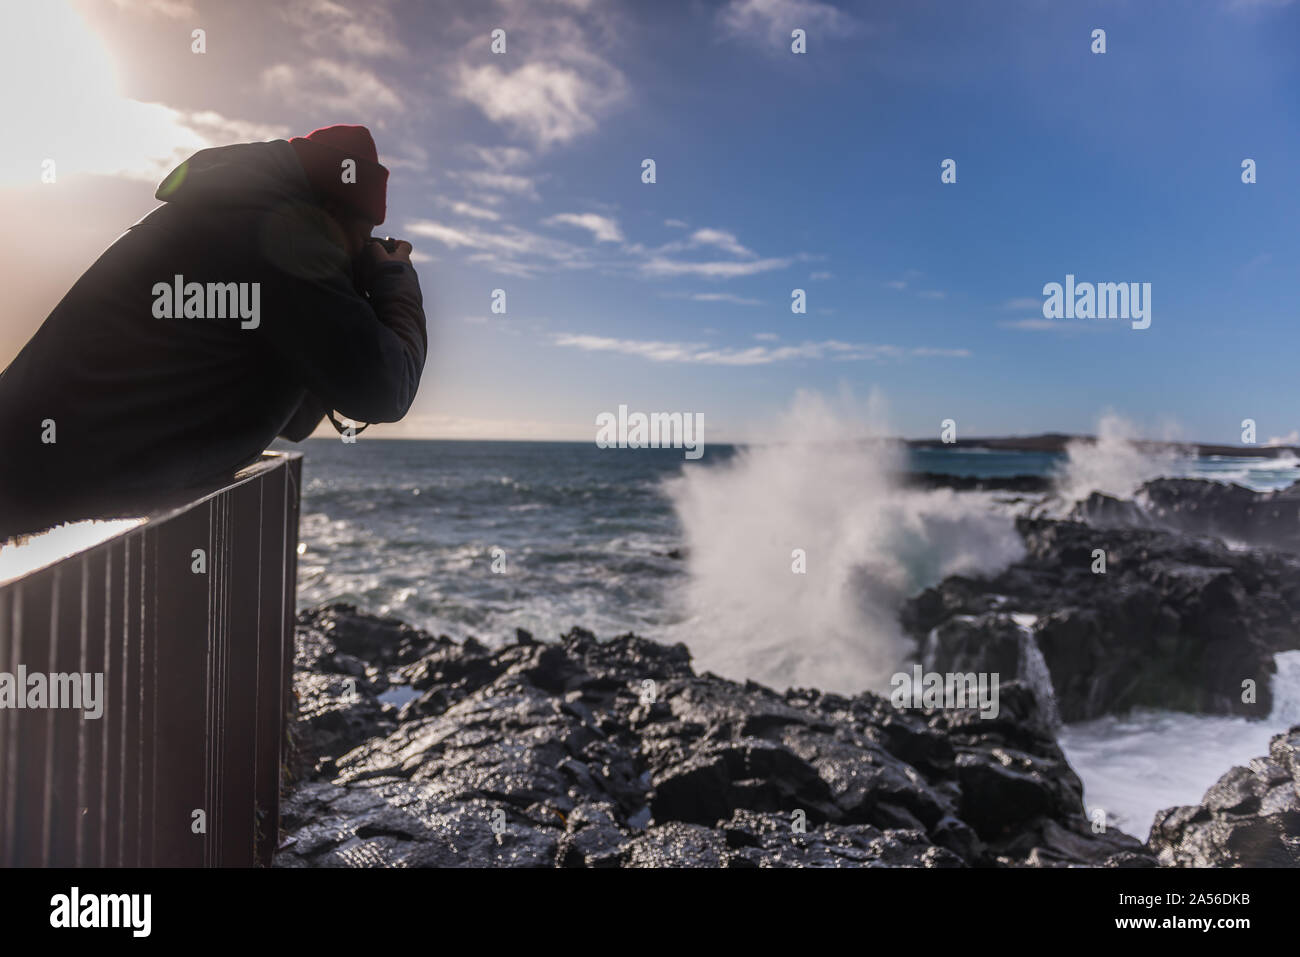 Turista fotografiando las olas del océano desde el muelle, Reykjanes, Islandia Foto de stock